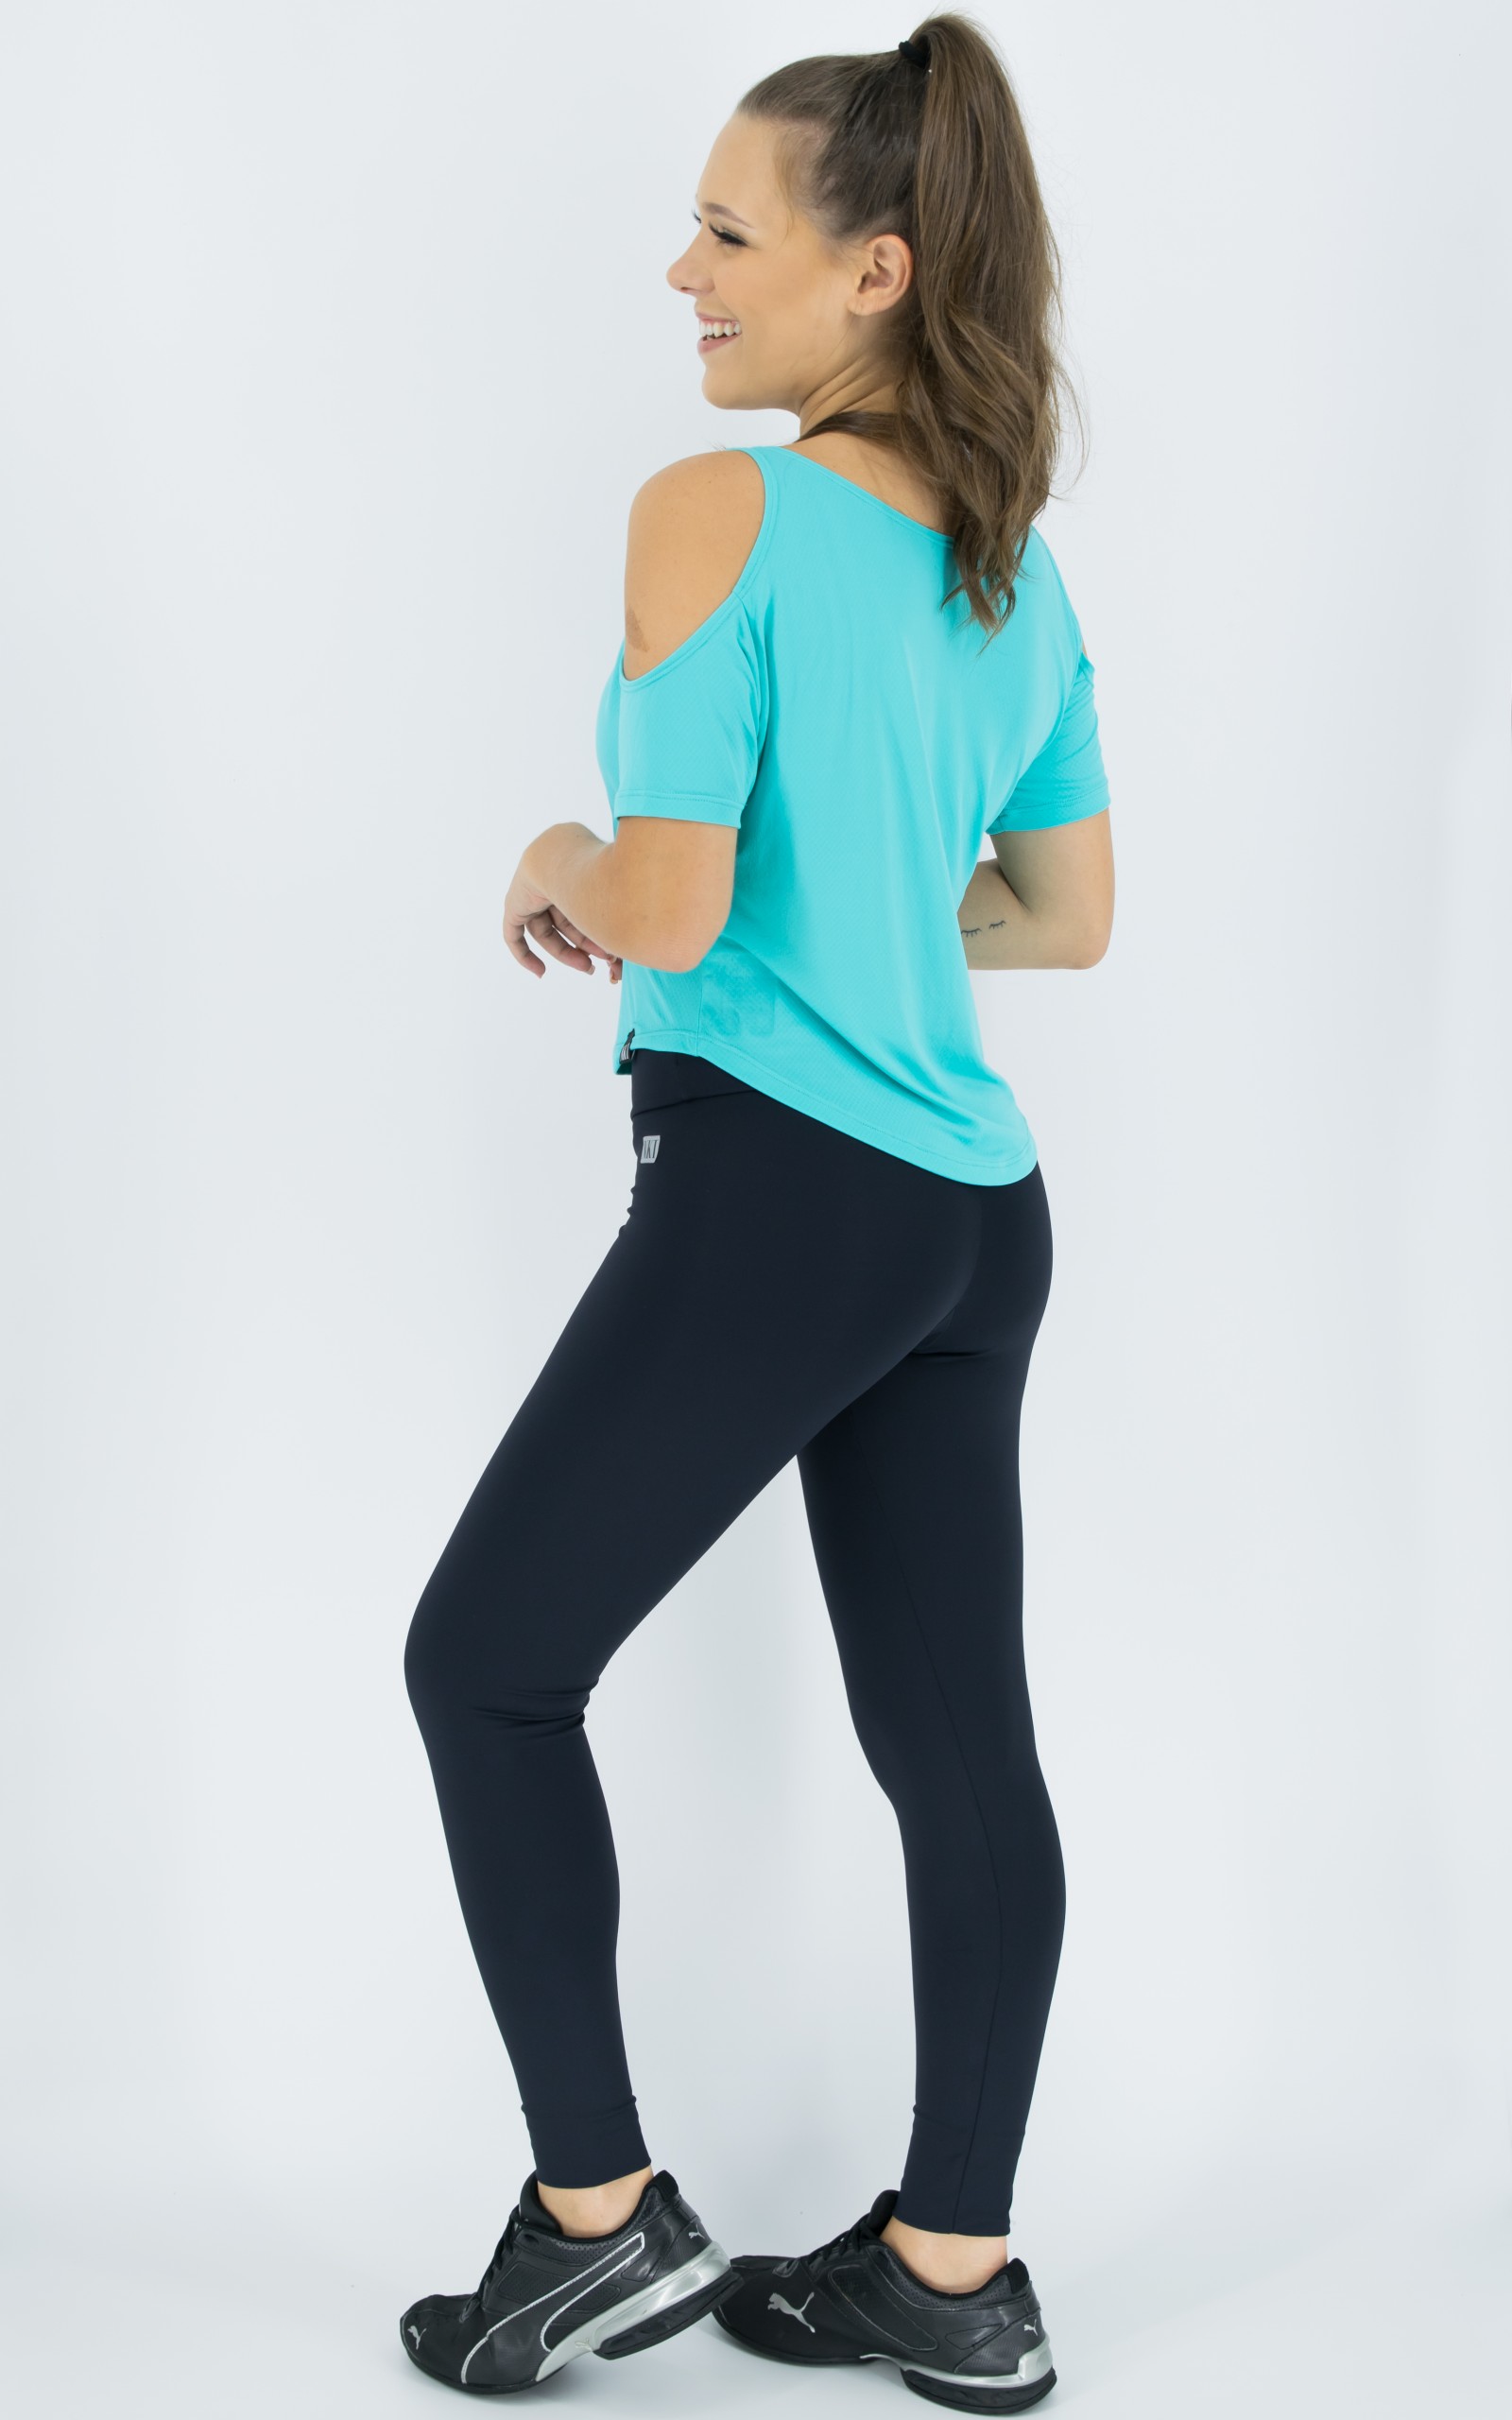 Blusa Like Azul, Coleção Move Your Body - NKT Fitwear Moda Fitness